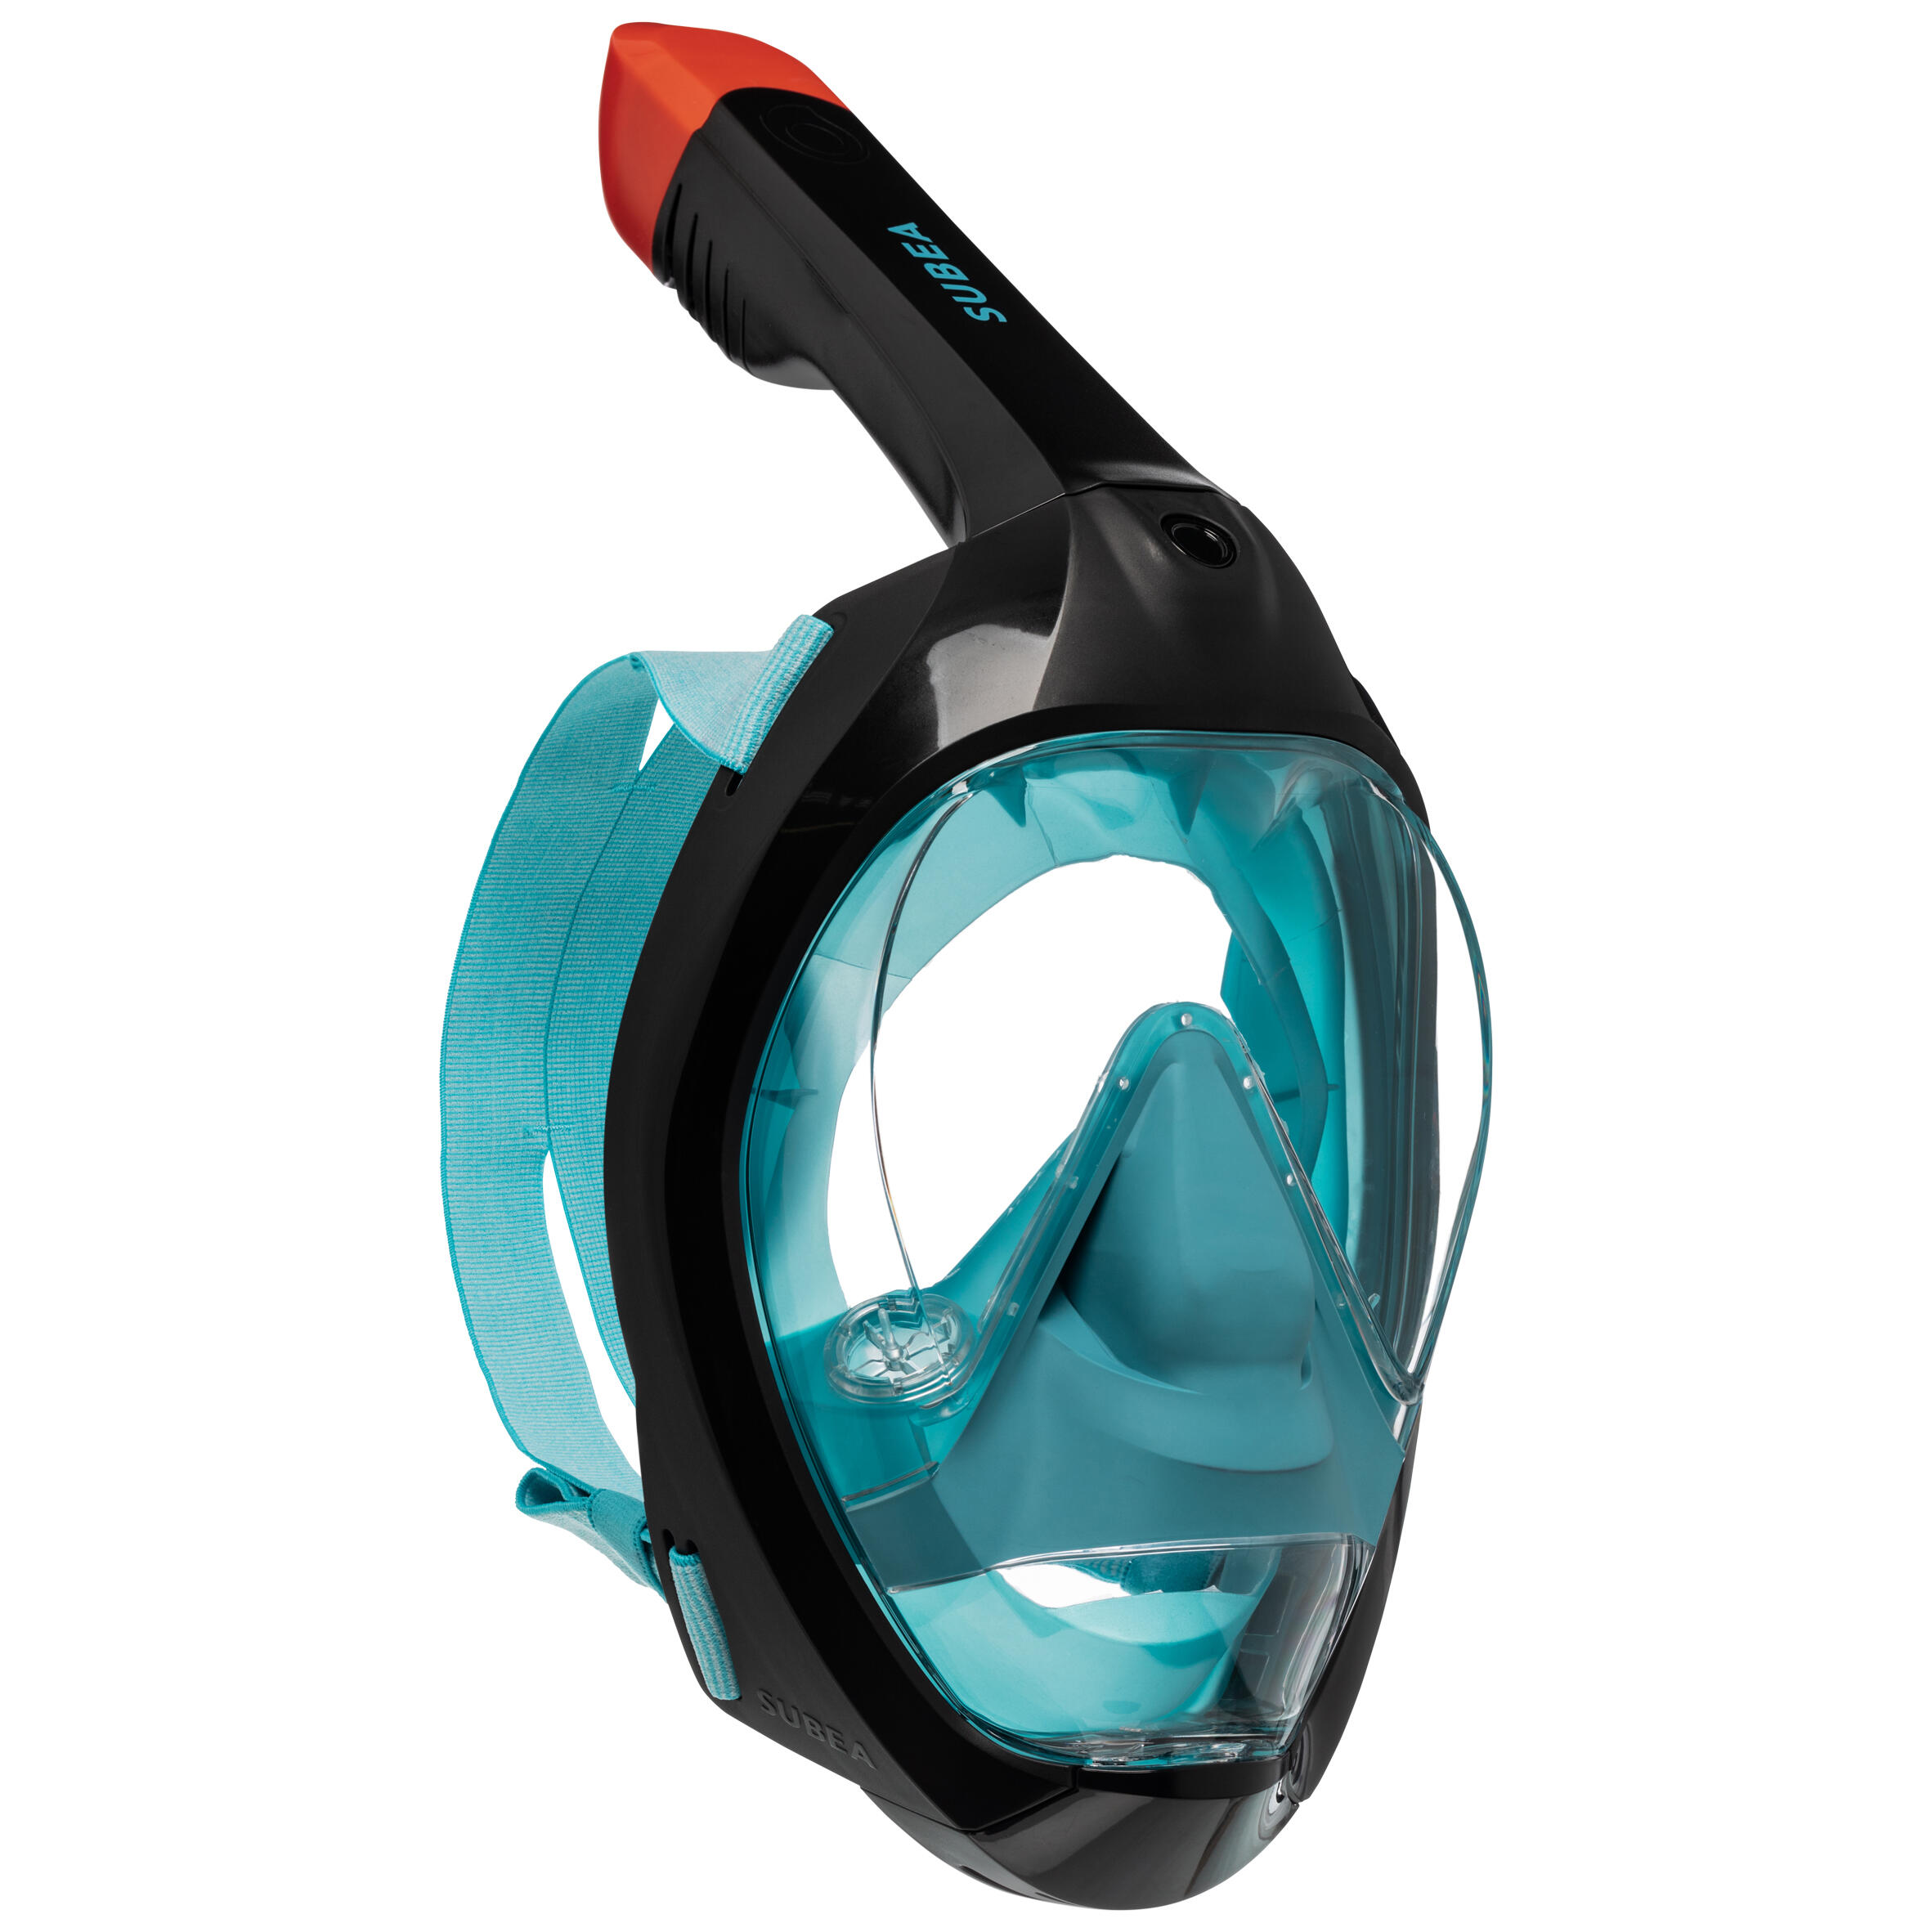 Flyboo Maschera da Snorkeling,Maschera Subacqueacon con Visuale Panoramica 180° Design Pieno Facciale e Compatibile con Videocamere Sportive Maschera per Immersioni per Adulti Bambini 